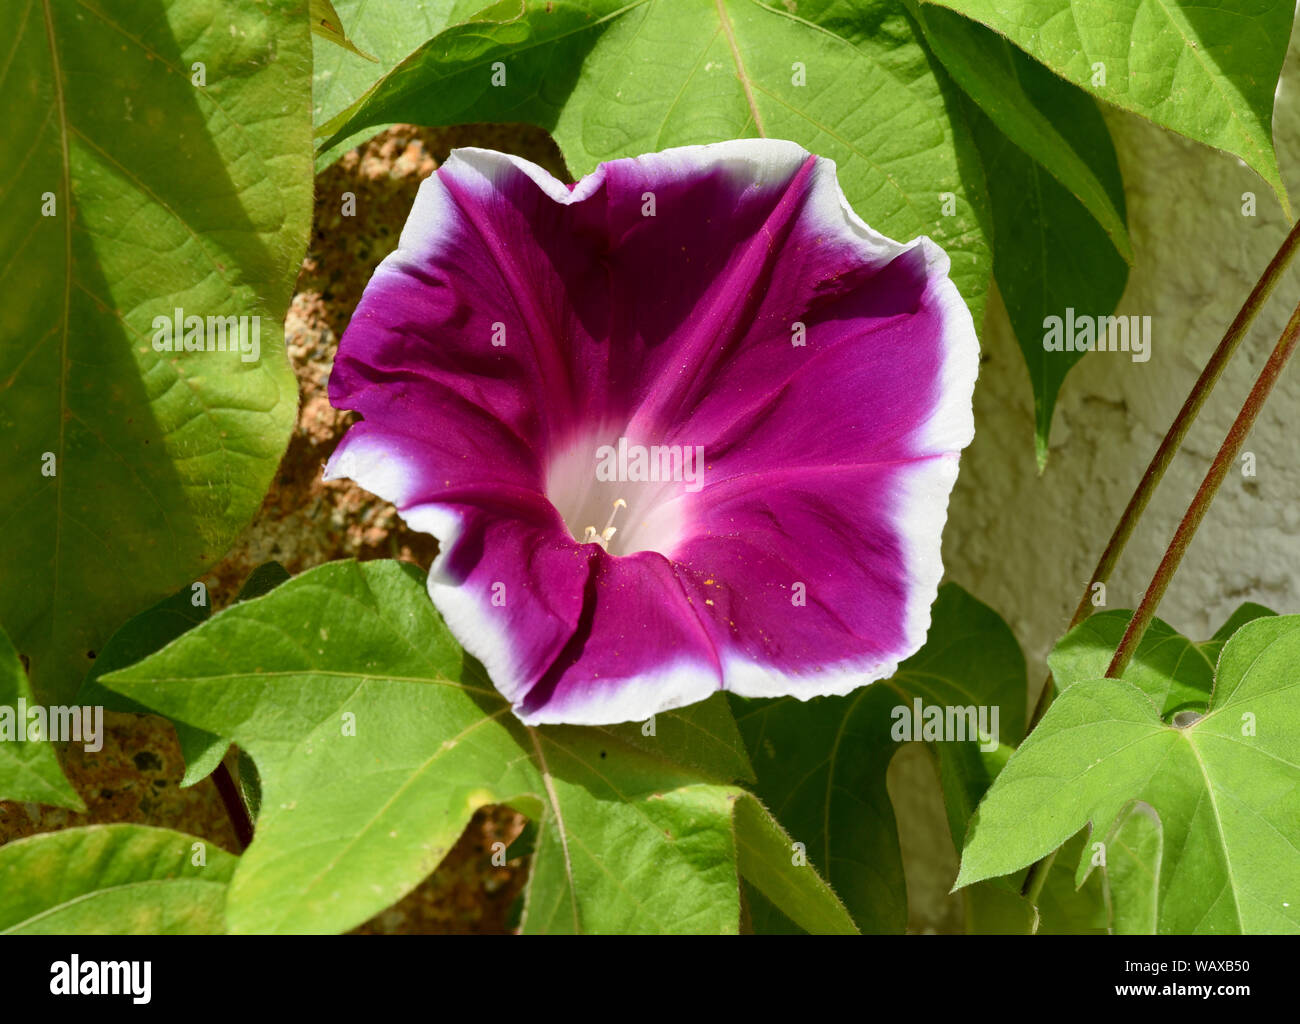 Trichterwinde, Dreifarbige Prunkwinde, Ipomoea purpurea, ist eine schoene Kletterpflanze mit verschiedenen farbigen, trichterfoermigen  Blueten. Morni Stock Photo